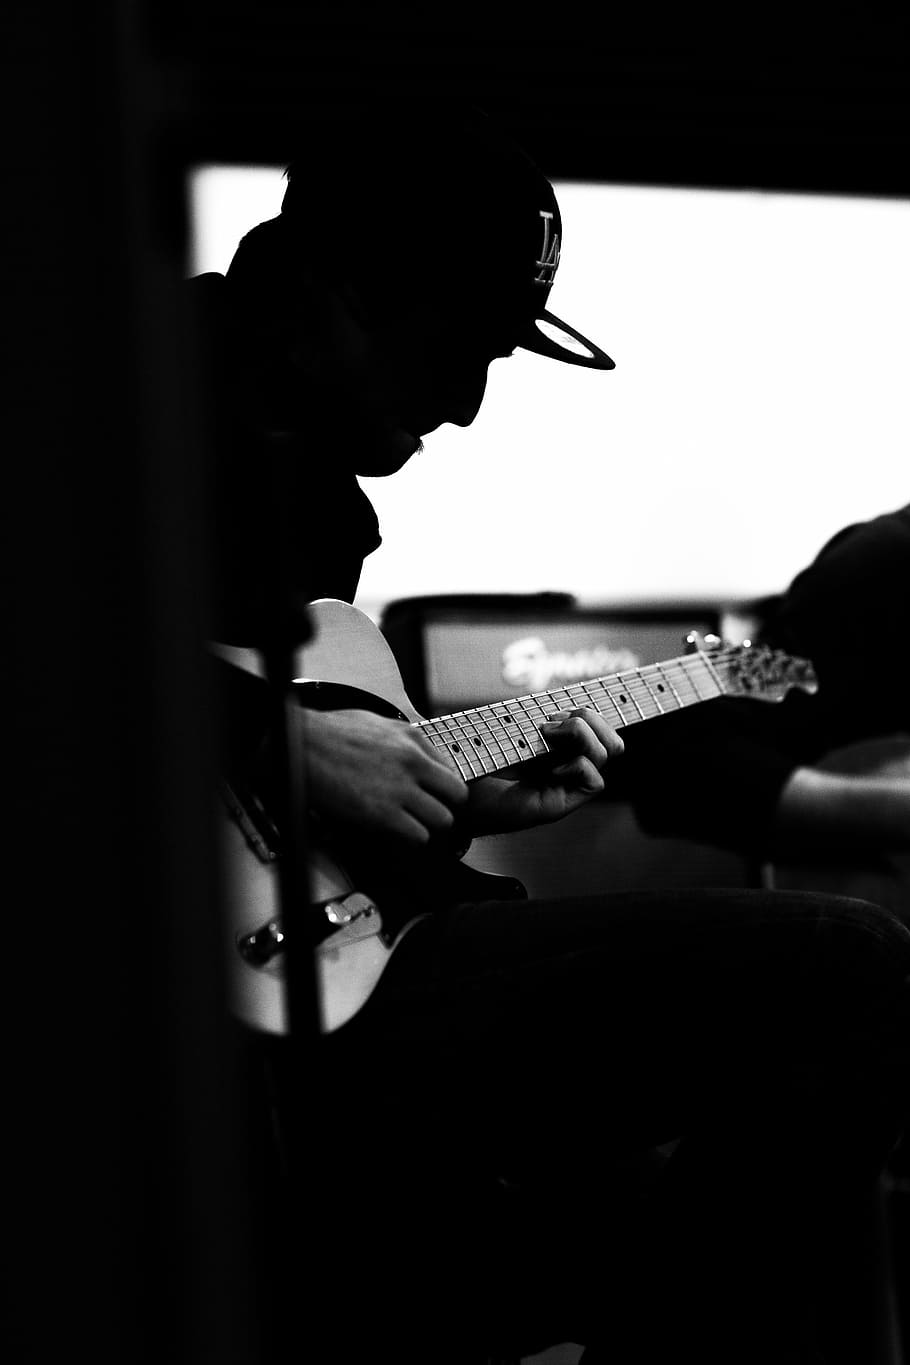 man playing guitar, guitarist, amplifier, music, instrument, musician